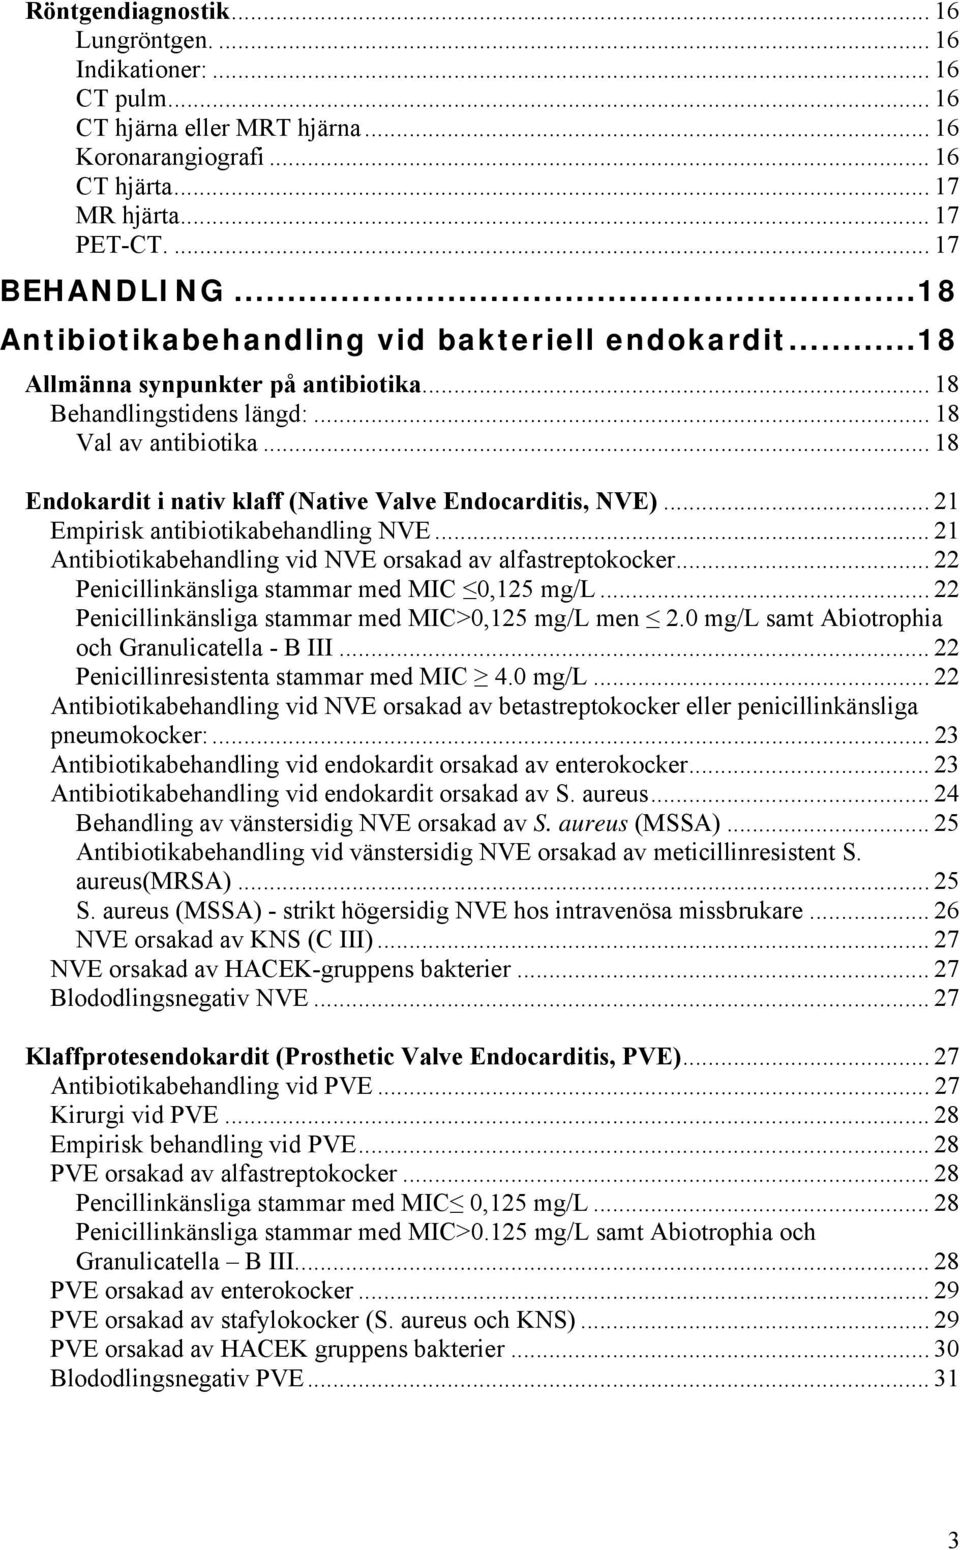 .. 18 Endokardit i nativ klaff (Native Valve Endocarditis, NVE)... 21 Empirisk antibiotikabehandling NVE... 21 Antibiotikabehandling vid NVE orsakad av alfastreptokocker.